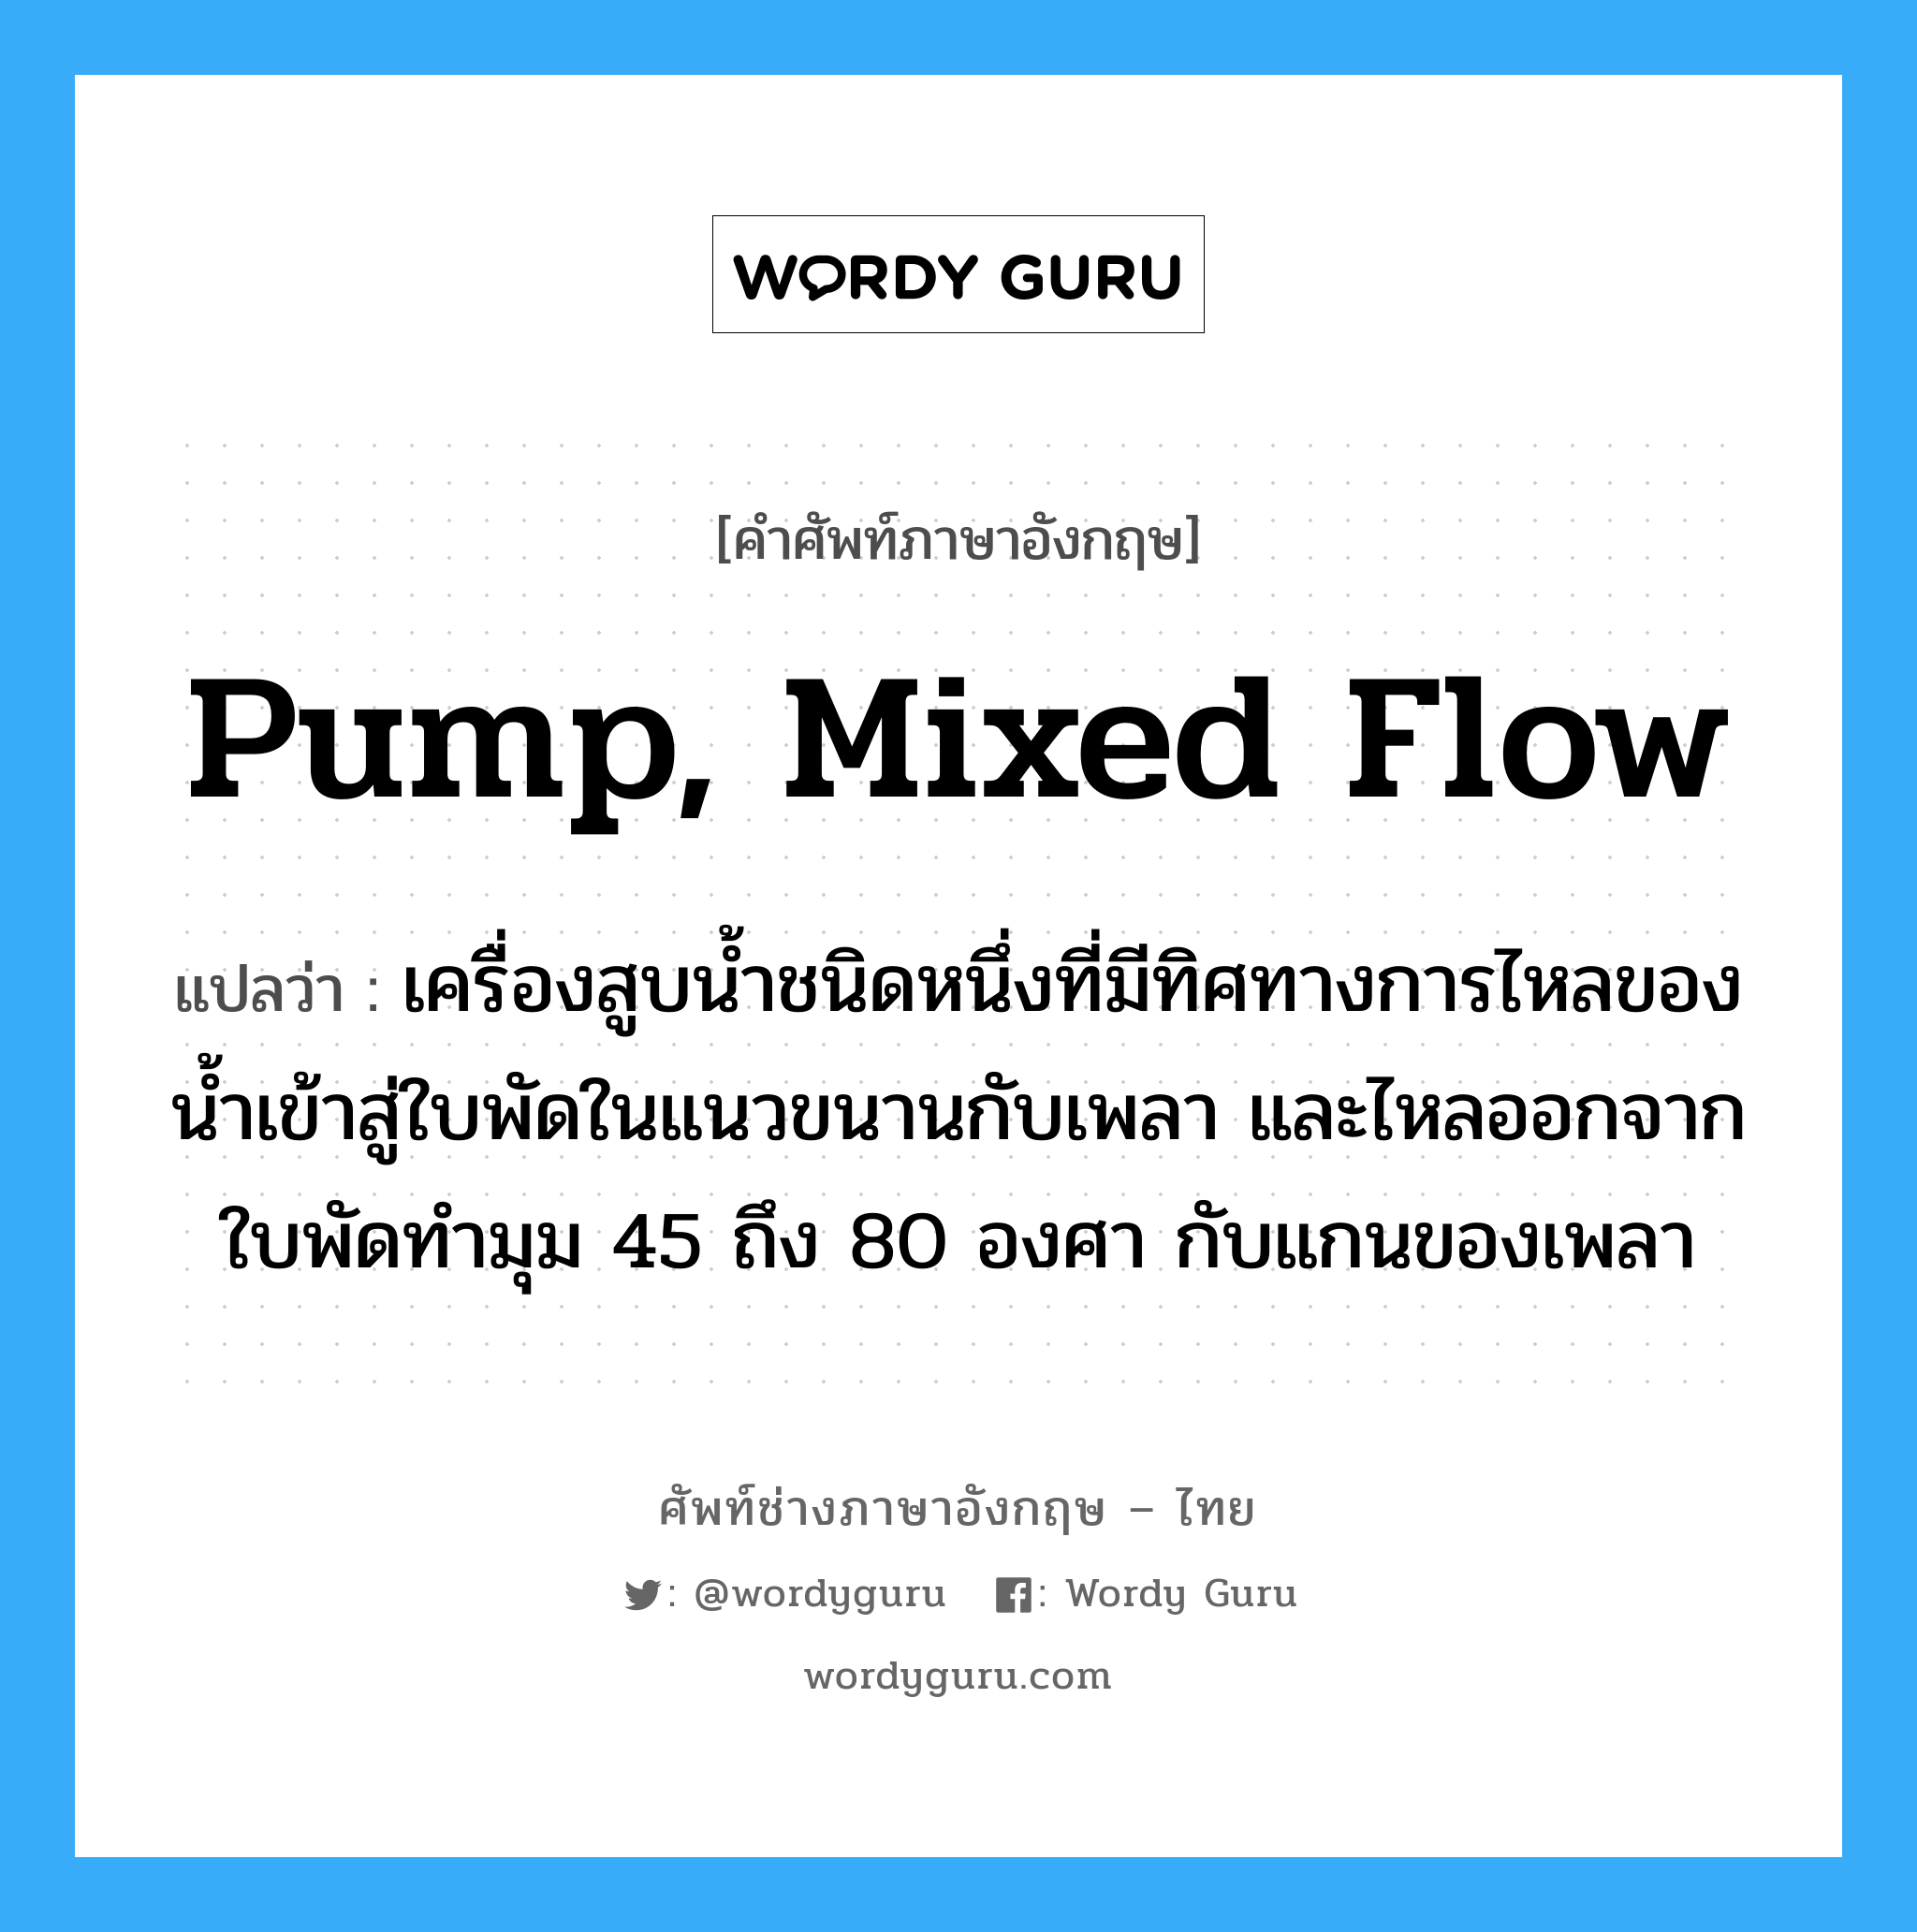 pump, mixed flow แปลว่า?, คำศัพท์ช่างภาษาอังกฤษ - ไทย pump, mixed flow คำศัพท์ภาษาอังกฤษ pump, mixed flow แปลว่า เครื่องสูบน้ำชนิดหนึ่งที่มีทิศทางการไหลของน้ำเข้าสู่ใบพัดในแนวขนานกับเพลา และไหลออกจากใบพัดทำมุม 45 ถึง 80 องศา กับแกนของเพลา